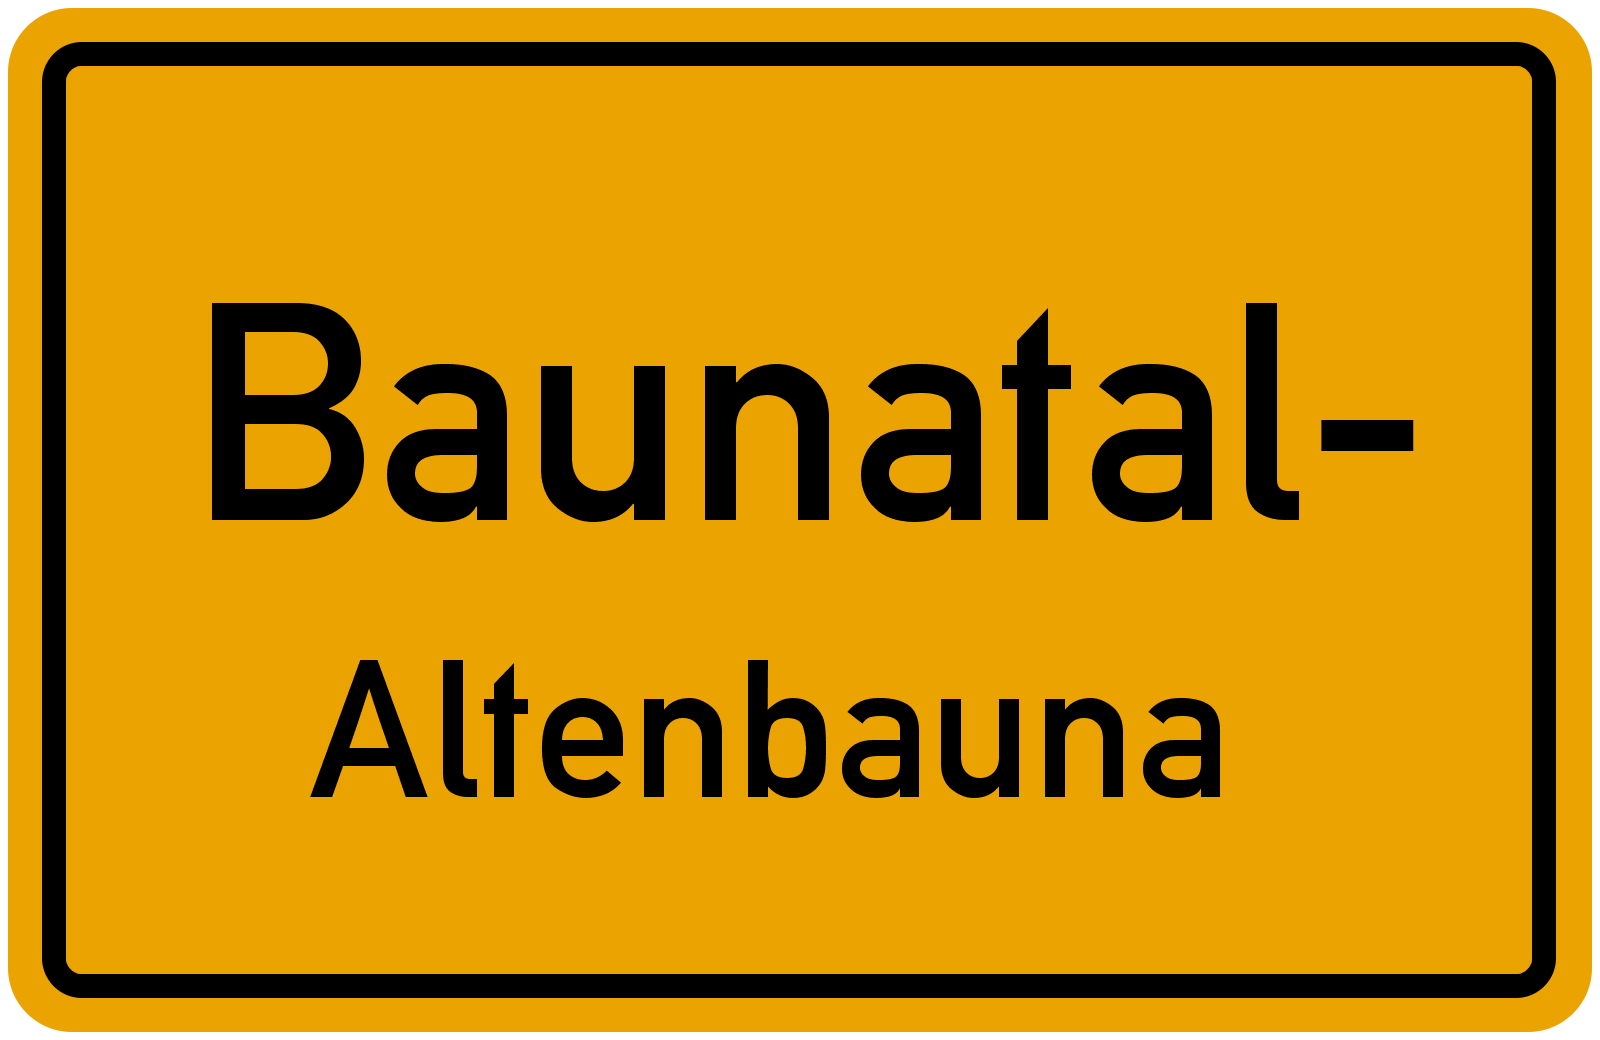 Altenbauna